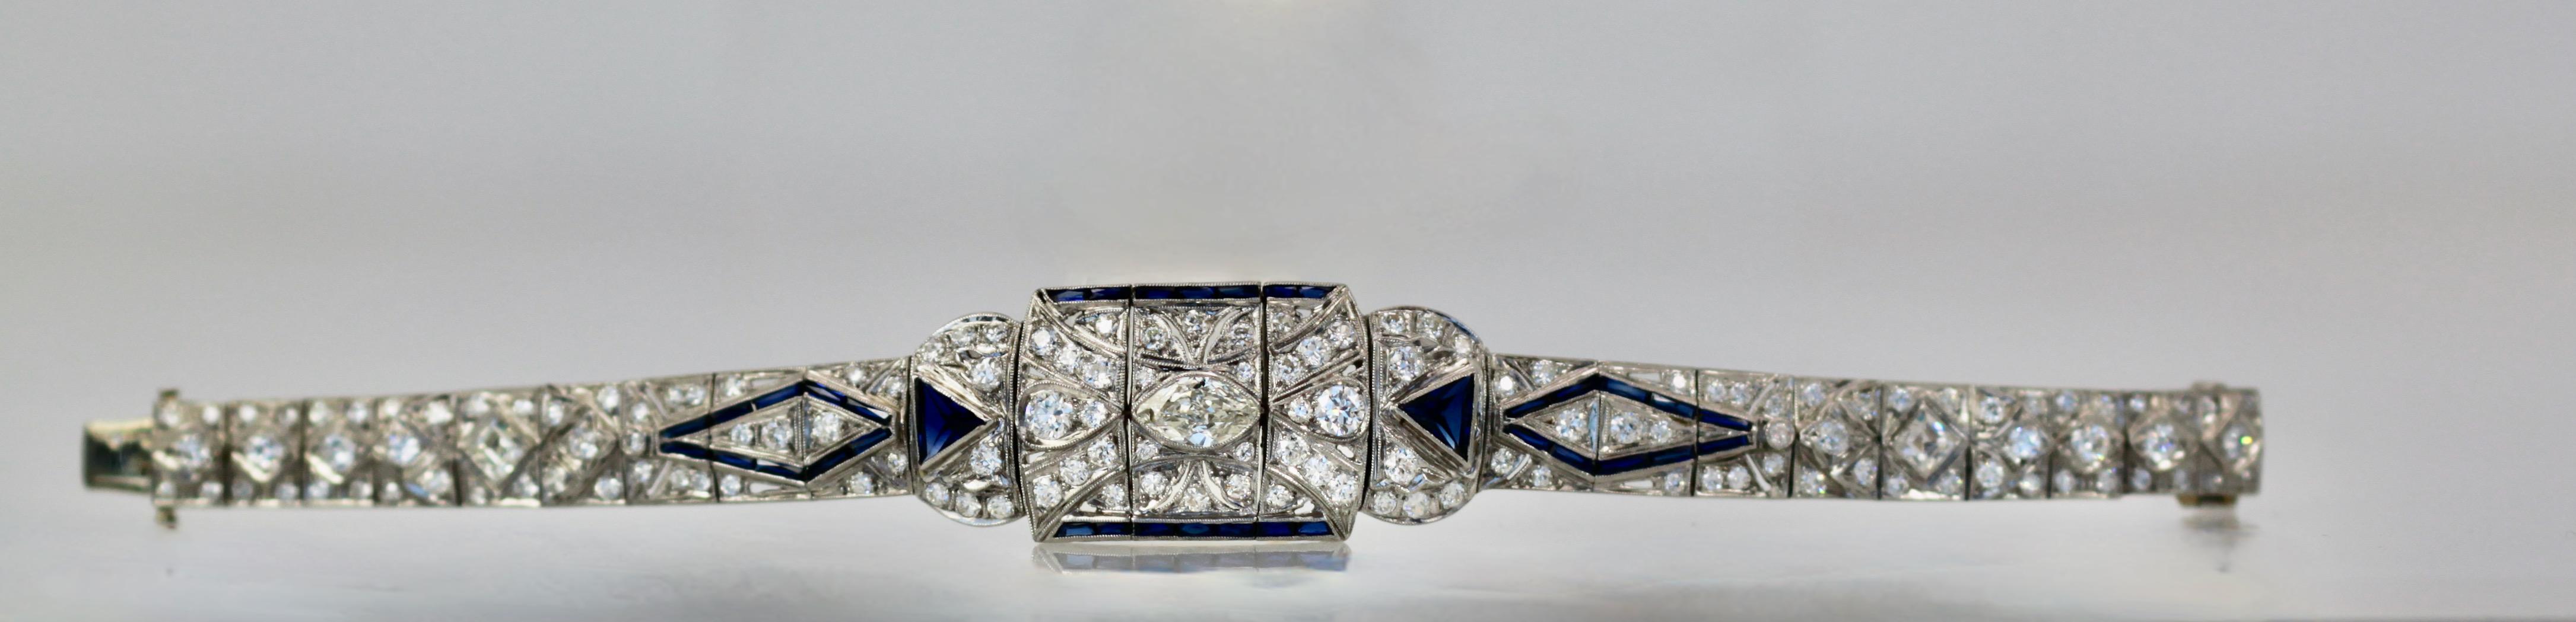 Women's Art Deco Platinum Diamond Sapphire Bracelet For Sale